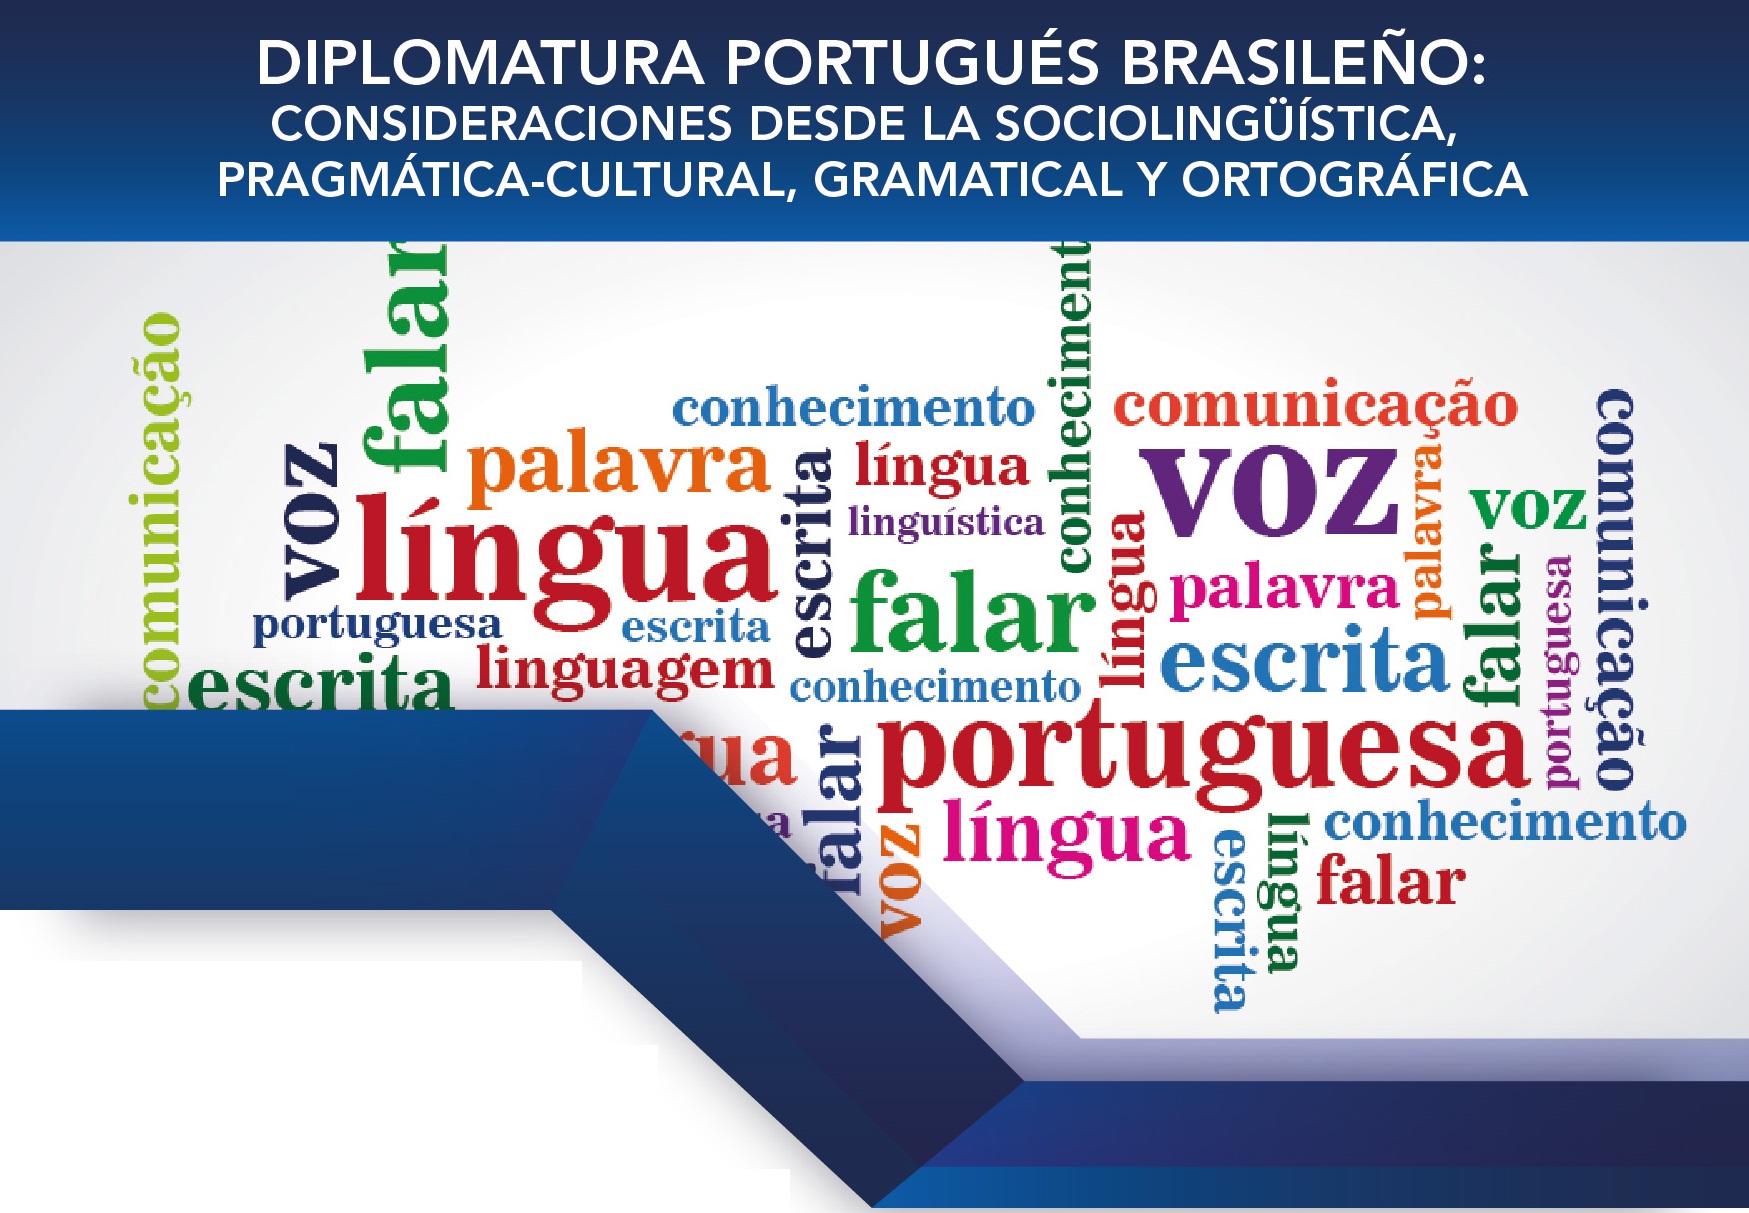 Diplomatura Portugués brasileño: Consideraciones desde la Sociolingüística, Pragmática-Cultural, Gramatical y Ortográfica